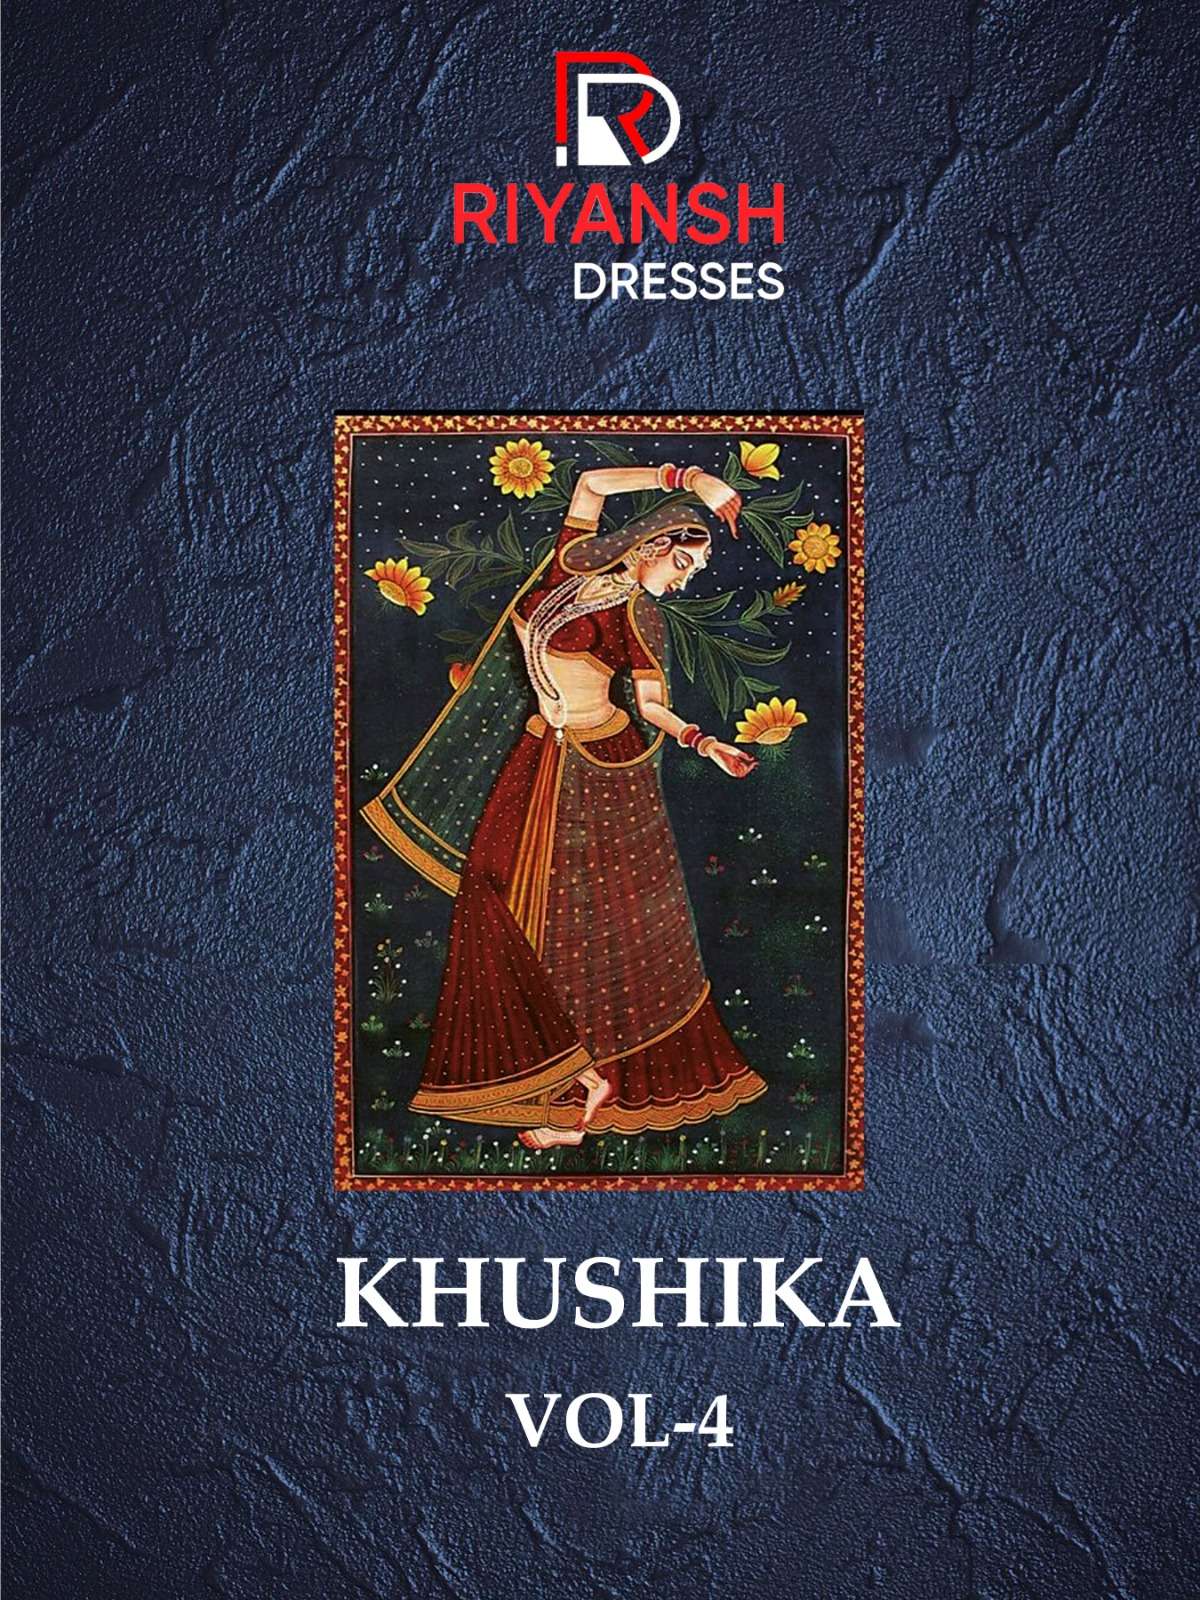 RIYANSH DRESSES KHUSHIKA VOL 4 